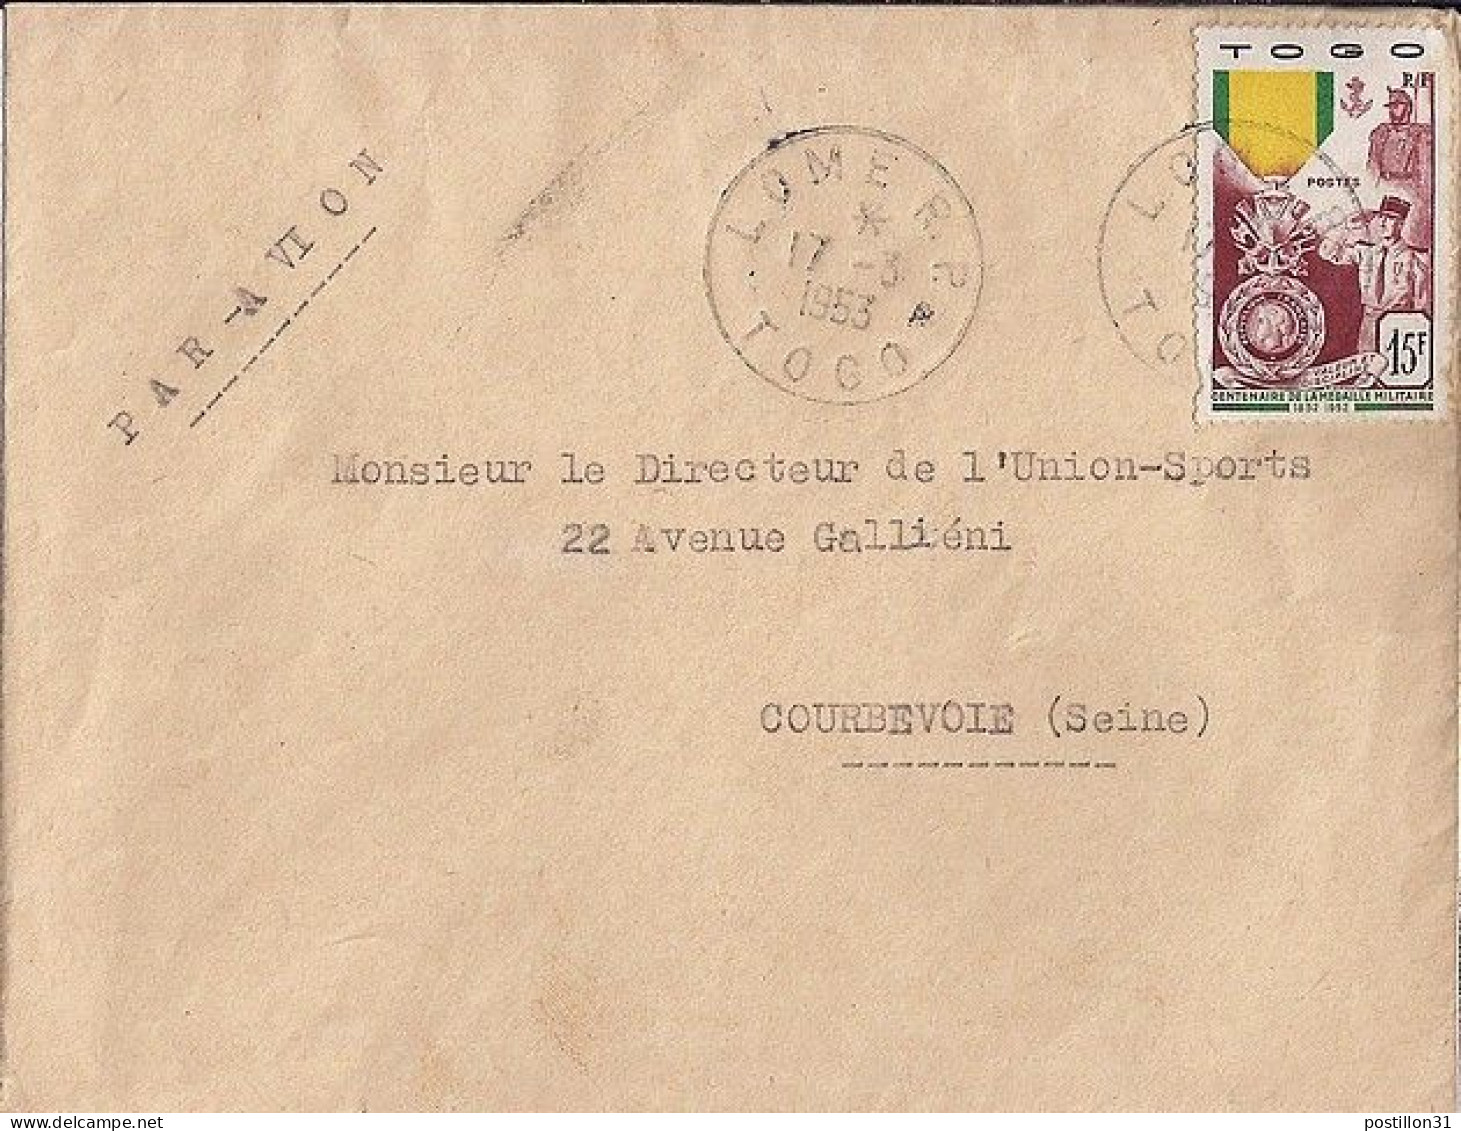 TOGO N° 255 S/L. DE LOME / 17.3.53 POUR LA FRANCE - Cartas & Documentos